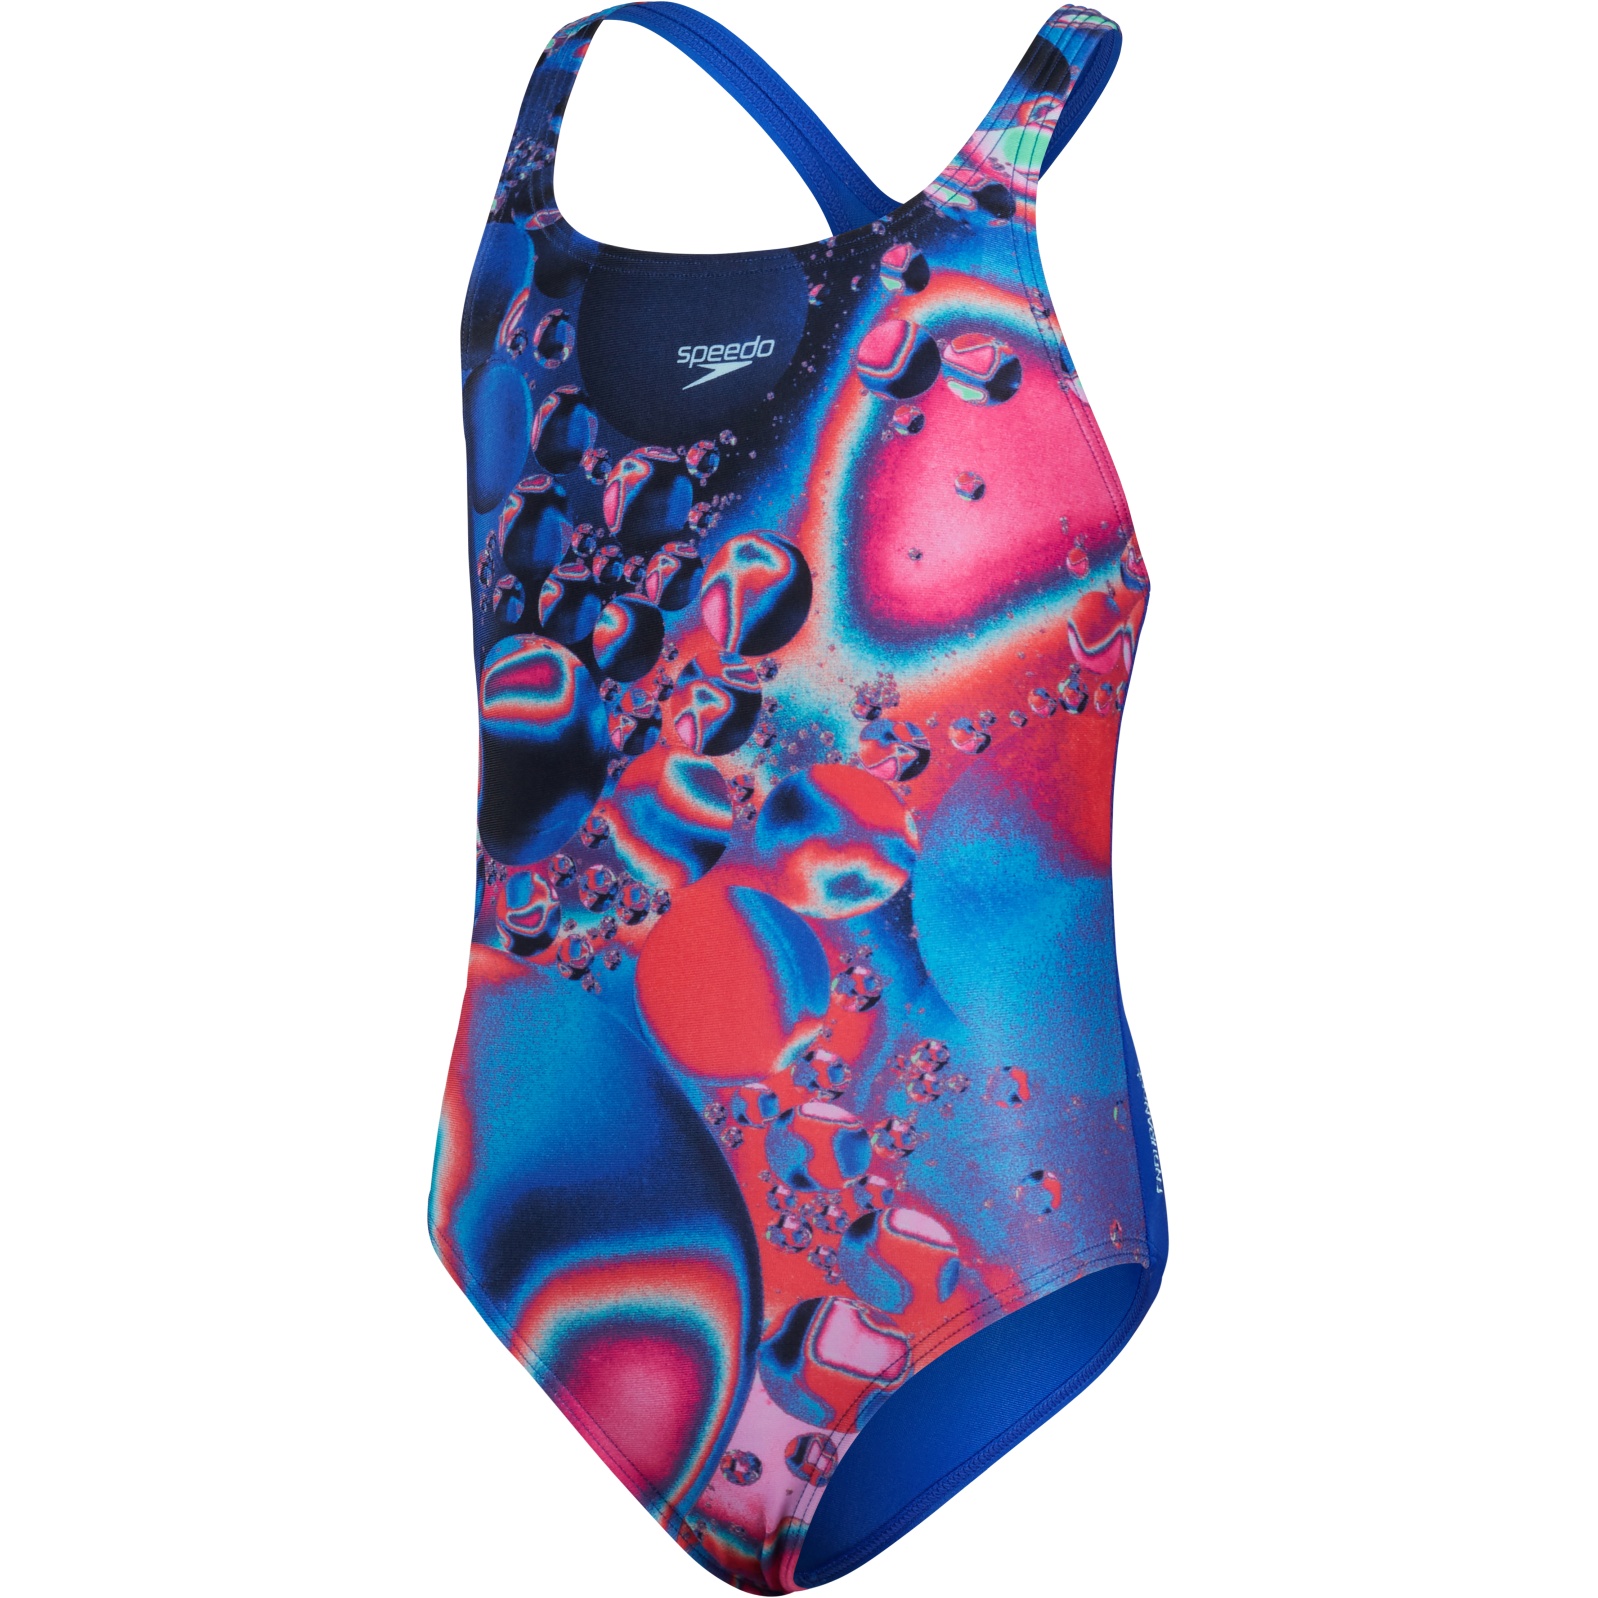 Bild von Speedo Digital Placement Medalist Badeanzug Mädchen - bubble blue flame/electric pink